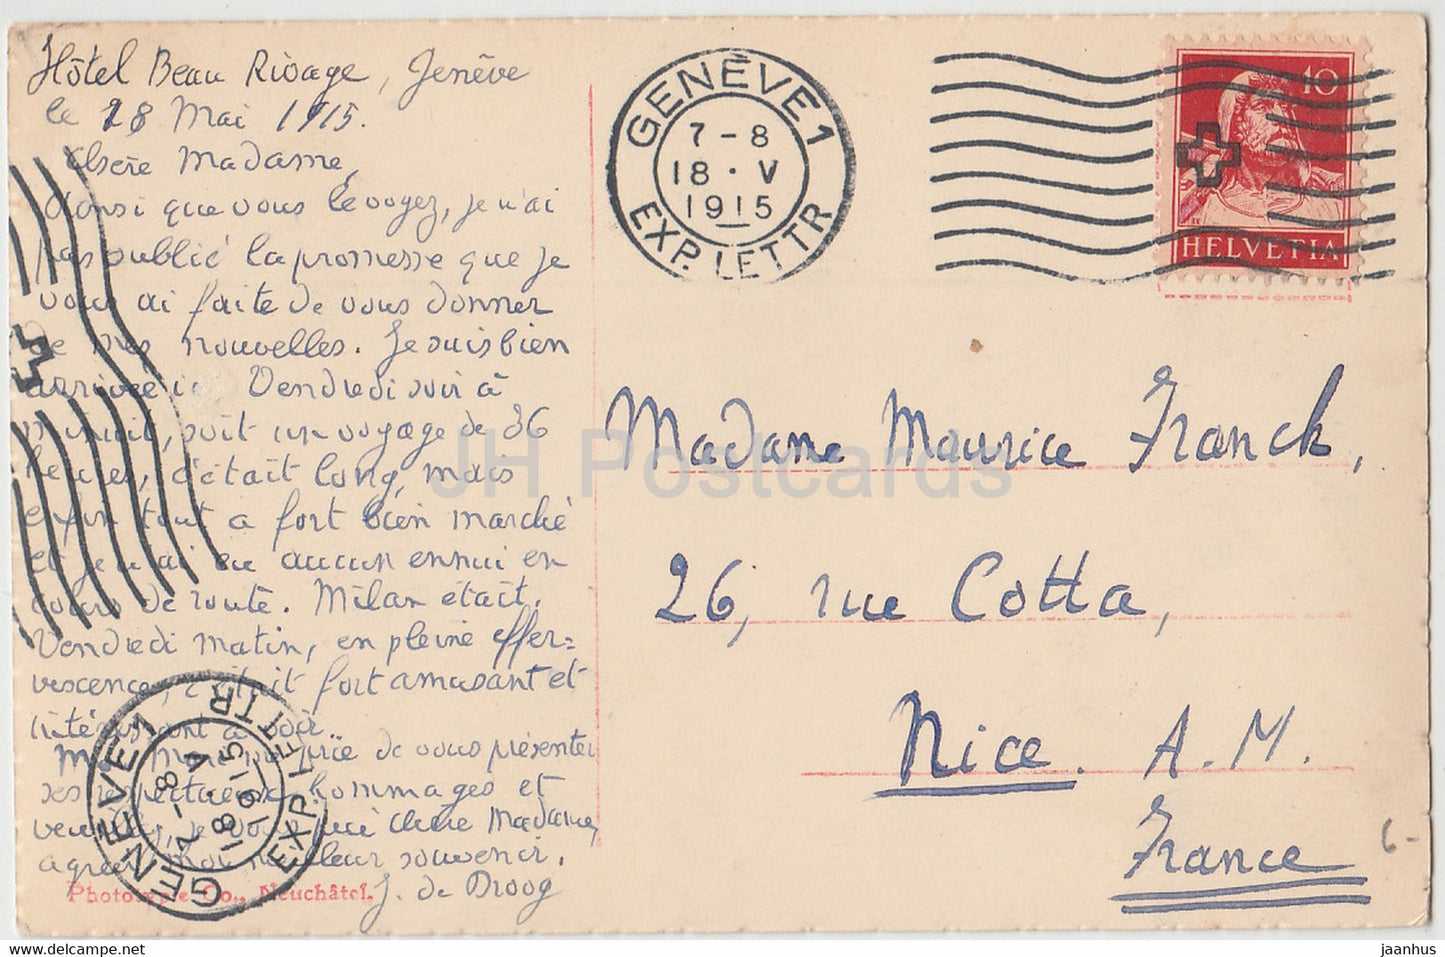 Geneve - Genève - Ponts et Ile JJ Rousseau - 6565 - carte postale ancienne - 1915 - Suisse - occasion